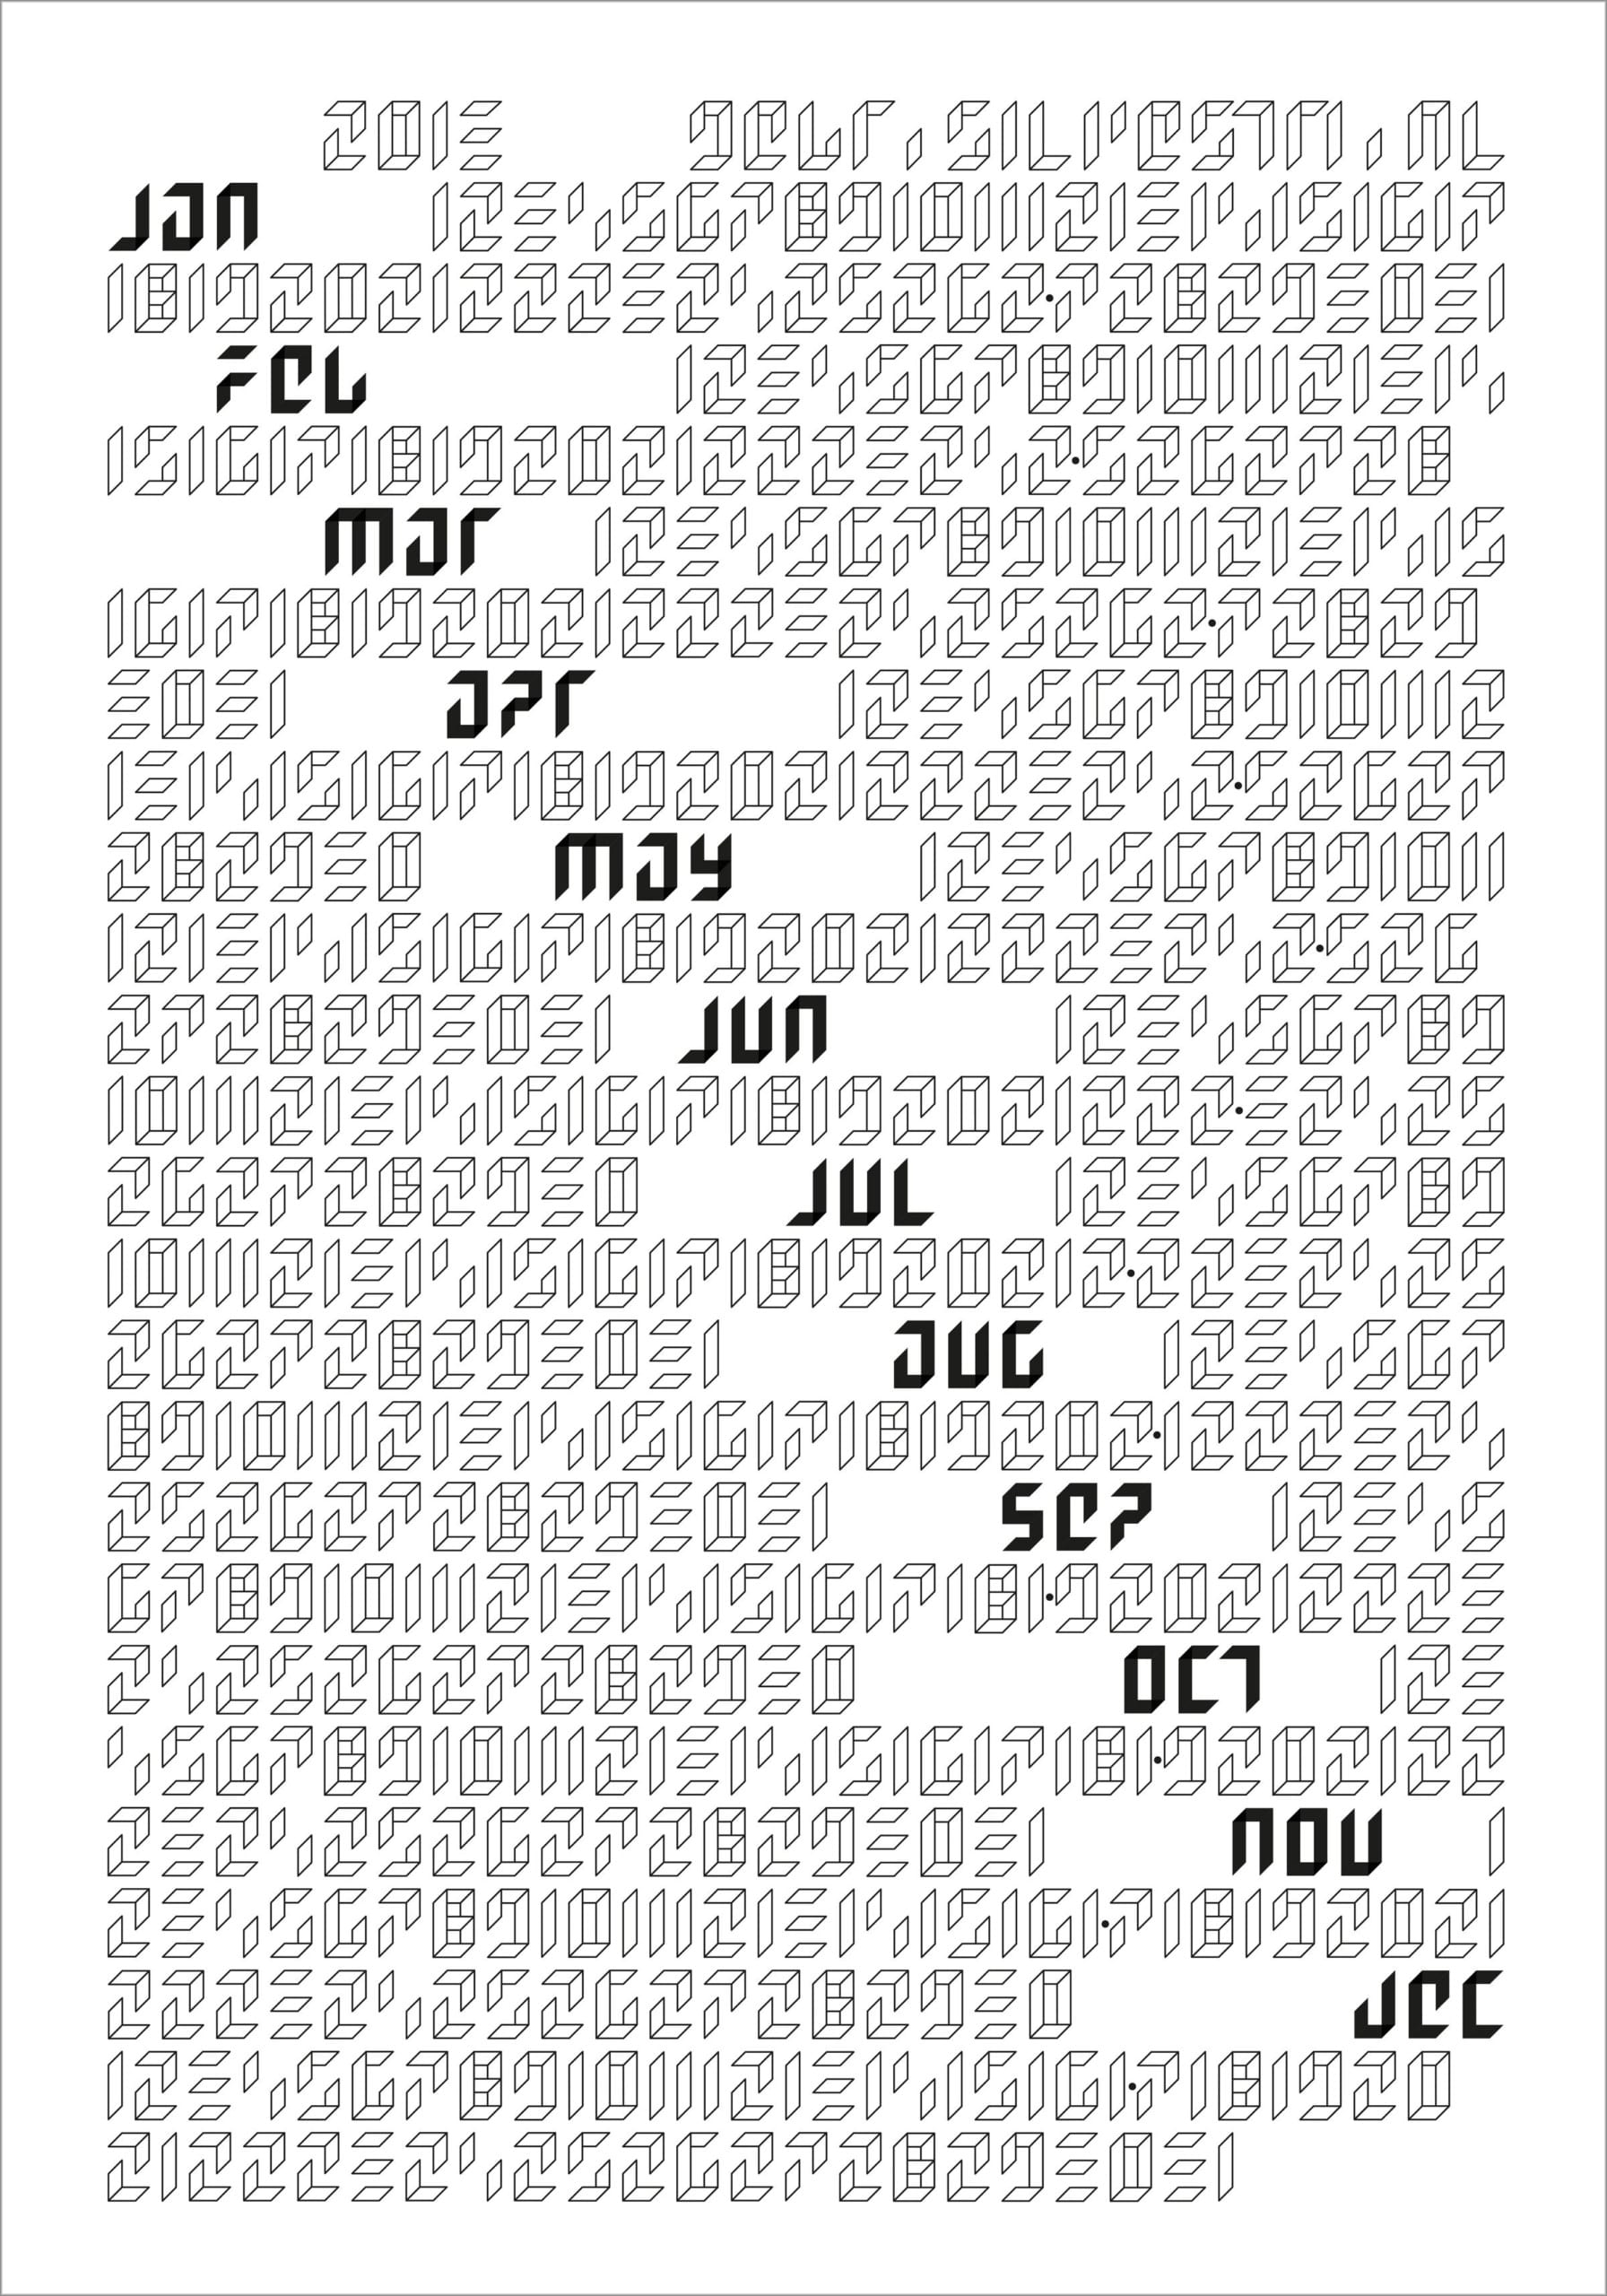 Gebr. Silvestri gebr.silvsetri – Wall calendar